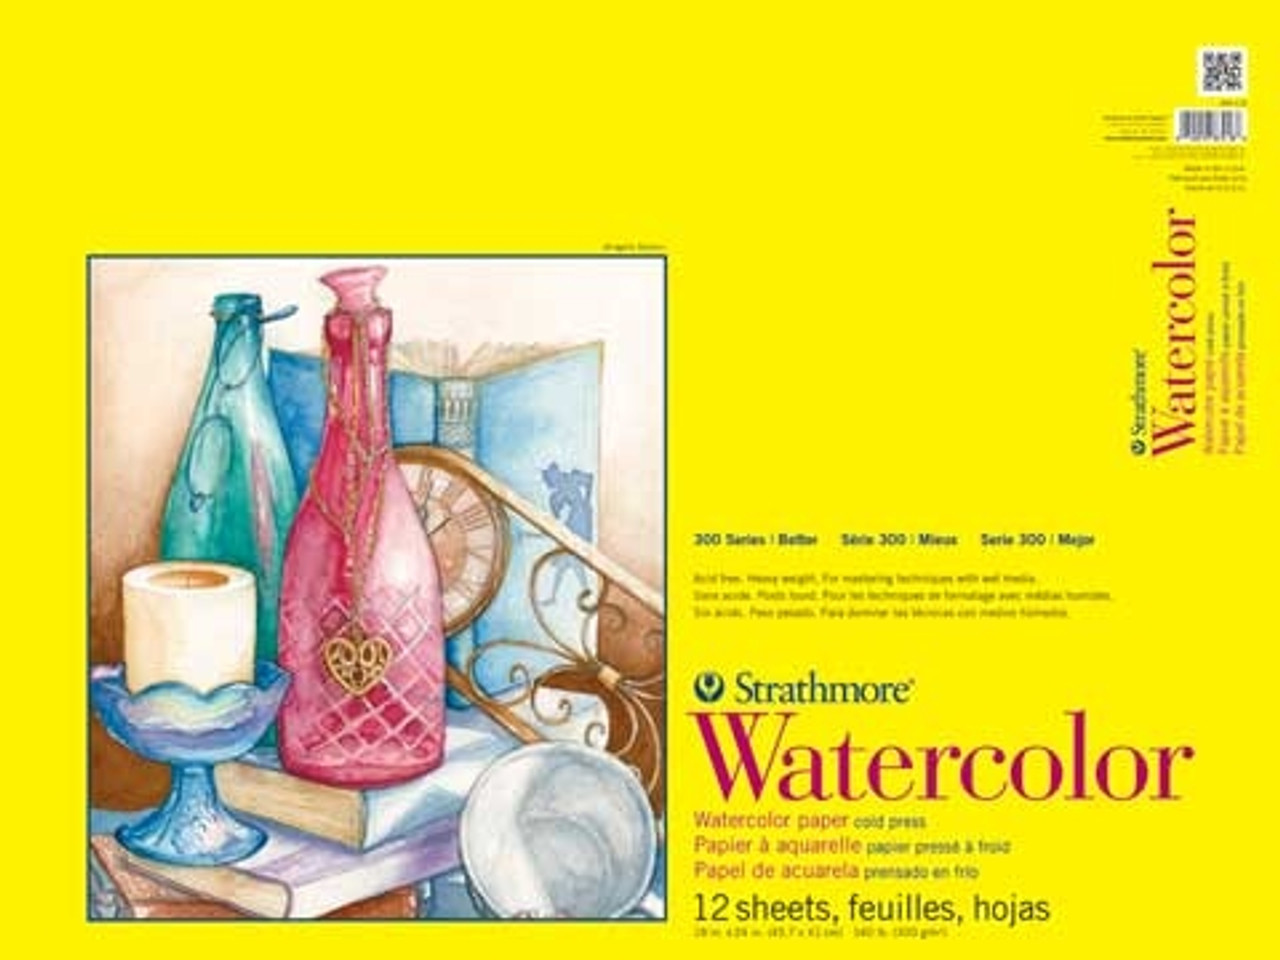 Bulk Watercolor Papers Suppliers -  – Hongjin Cultural